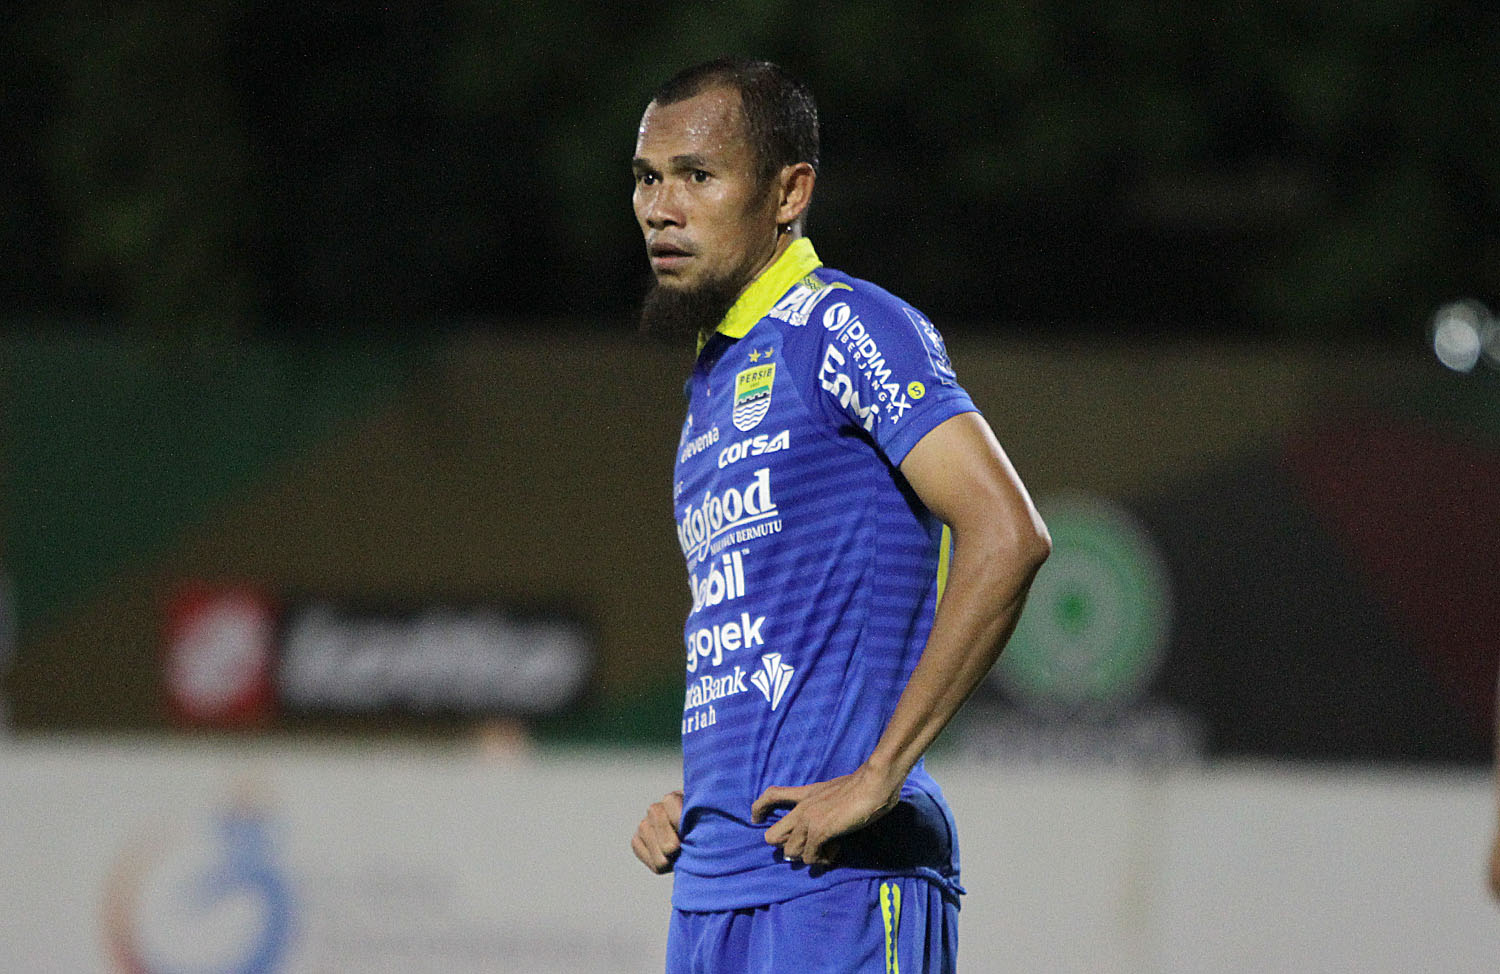 Kapten Persib Bandung Ungkap 5 Klub yang Wajib Diwaspadai di Liga 1 2021-2022